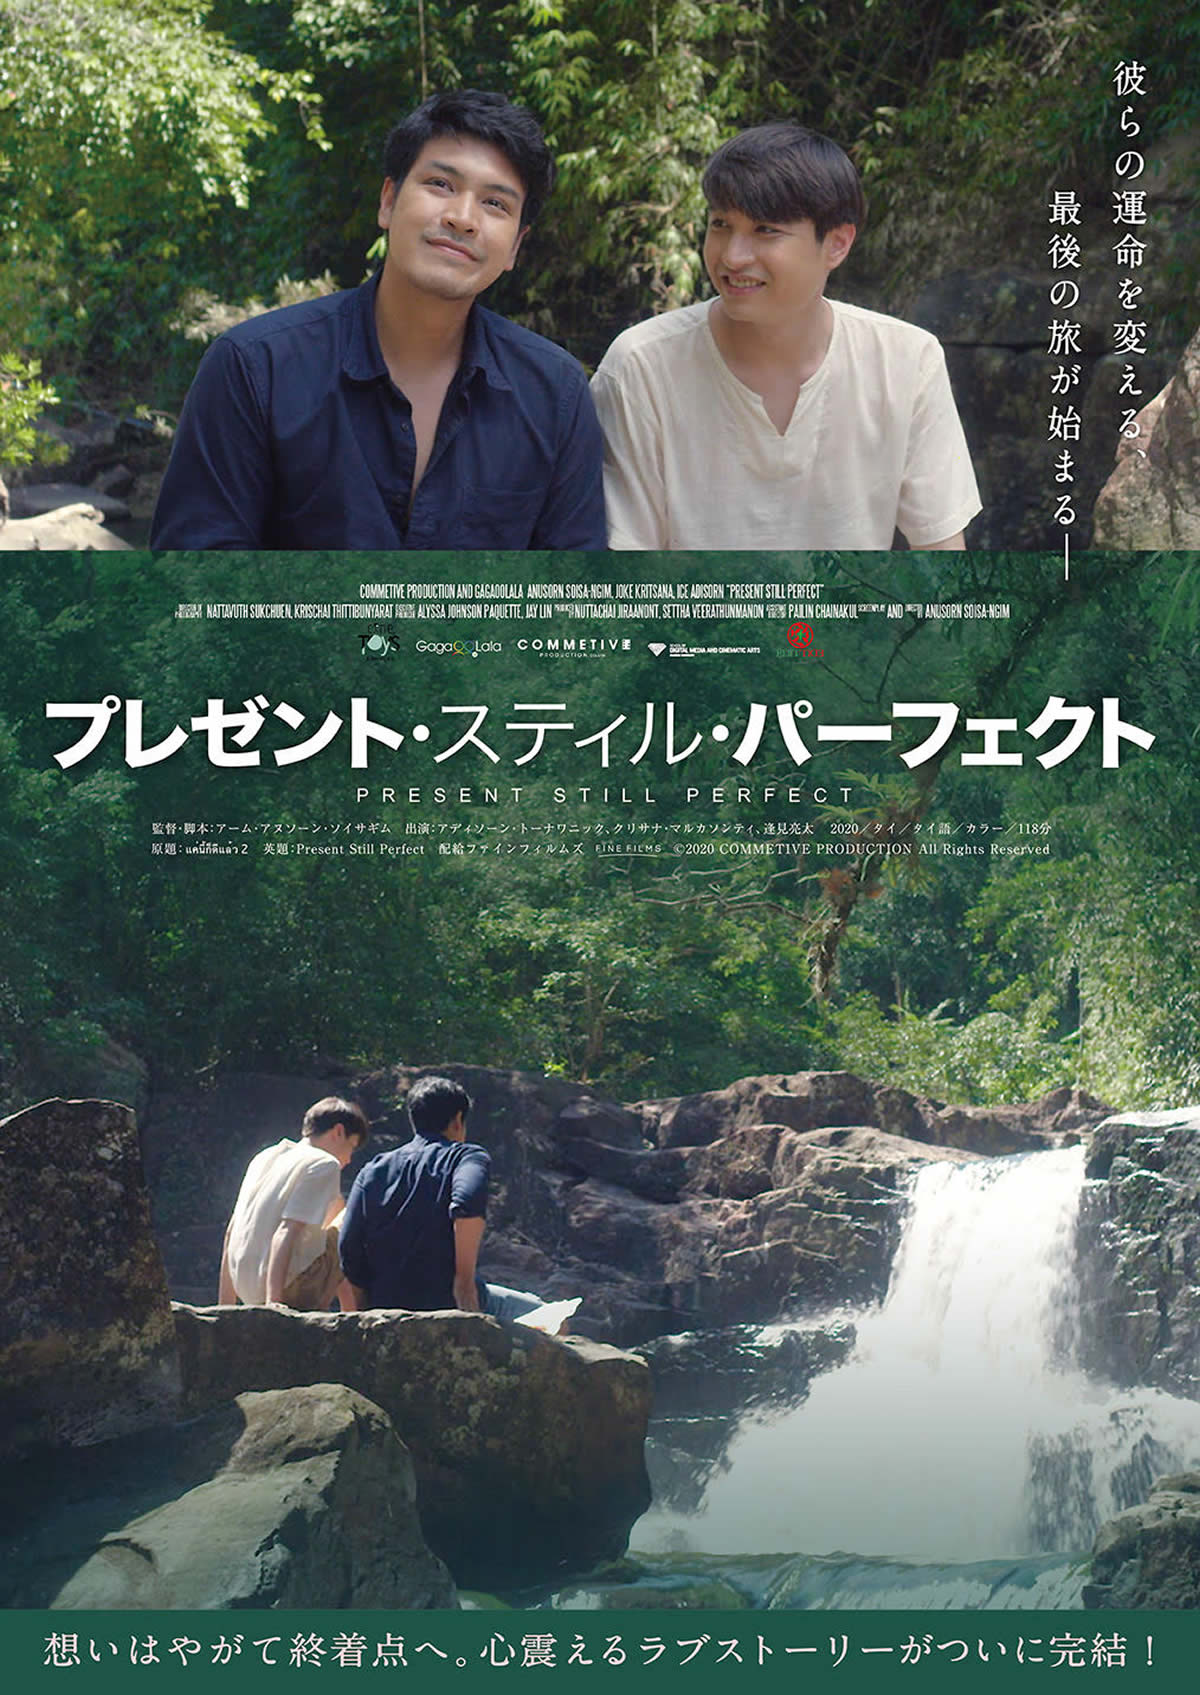 タイ映画「プレゼント・スティル・パーフェクト』日本で2022年4月1日公開